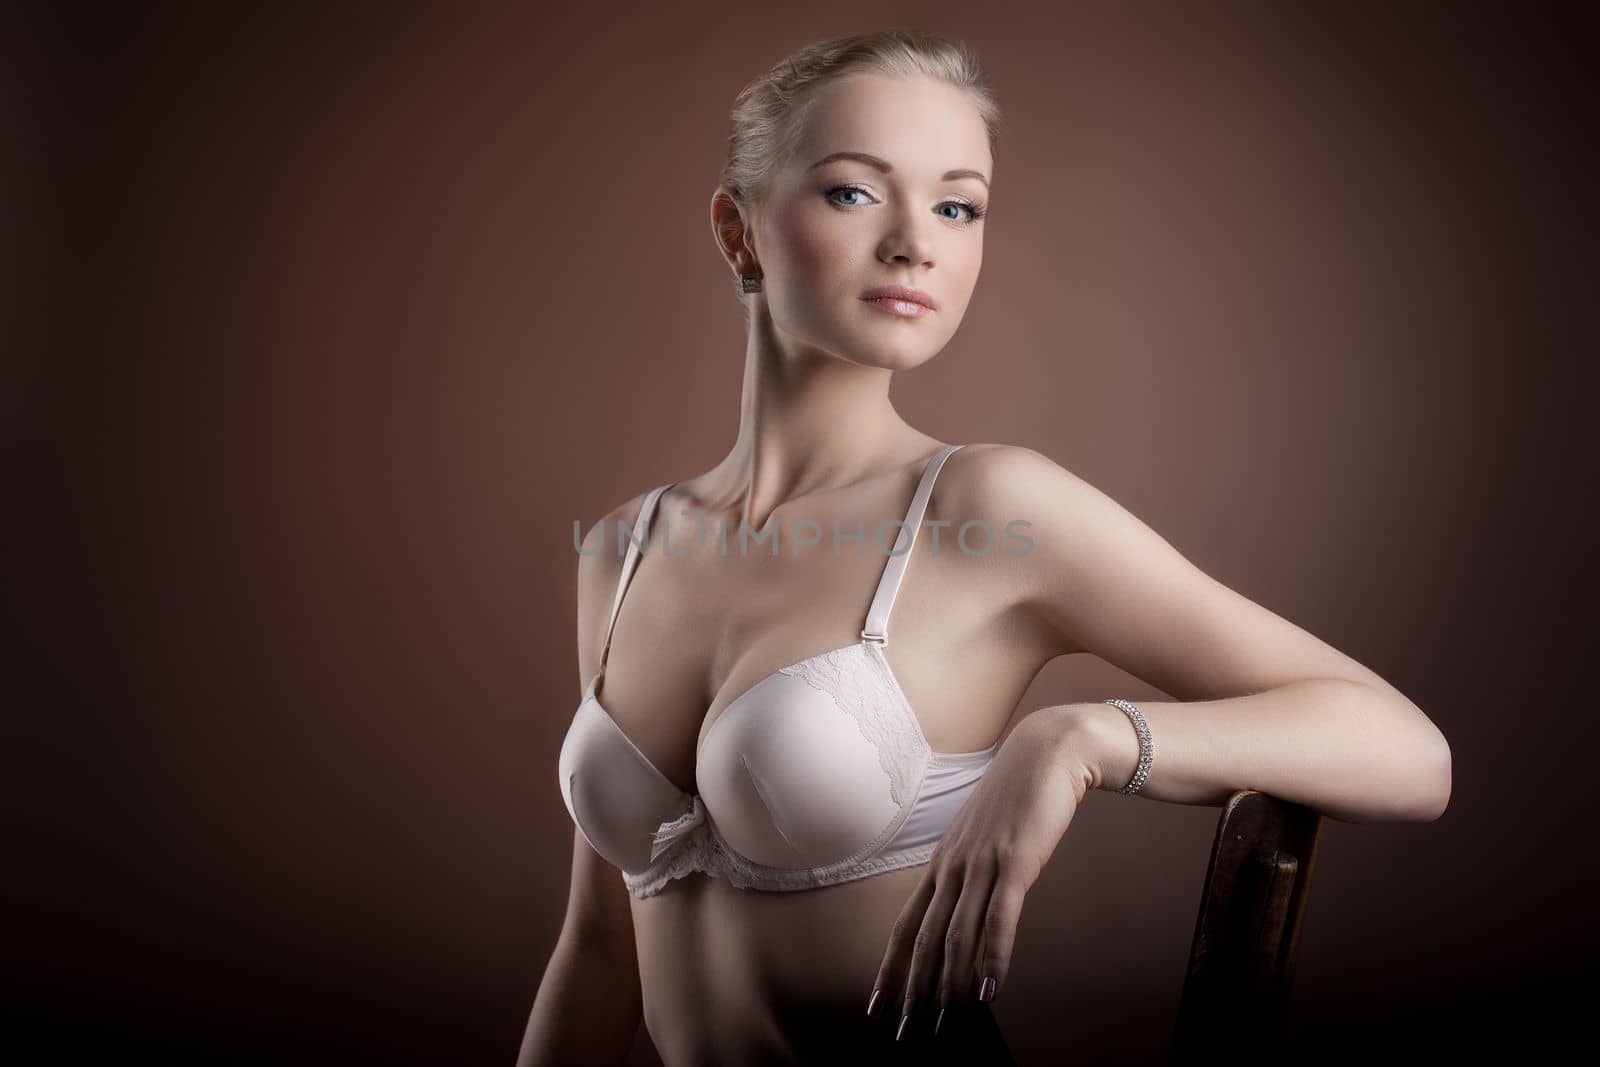 Beautiful woman portrait in white bra by rivertime